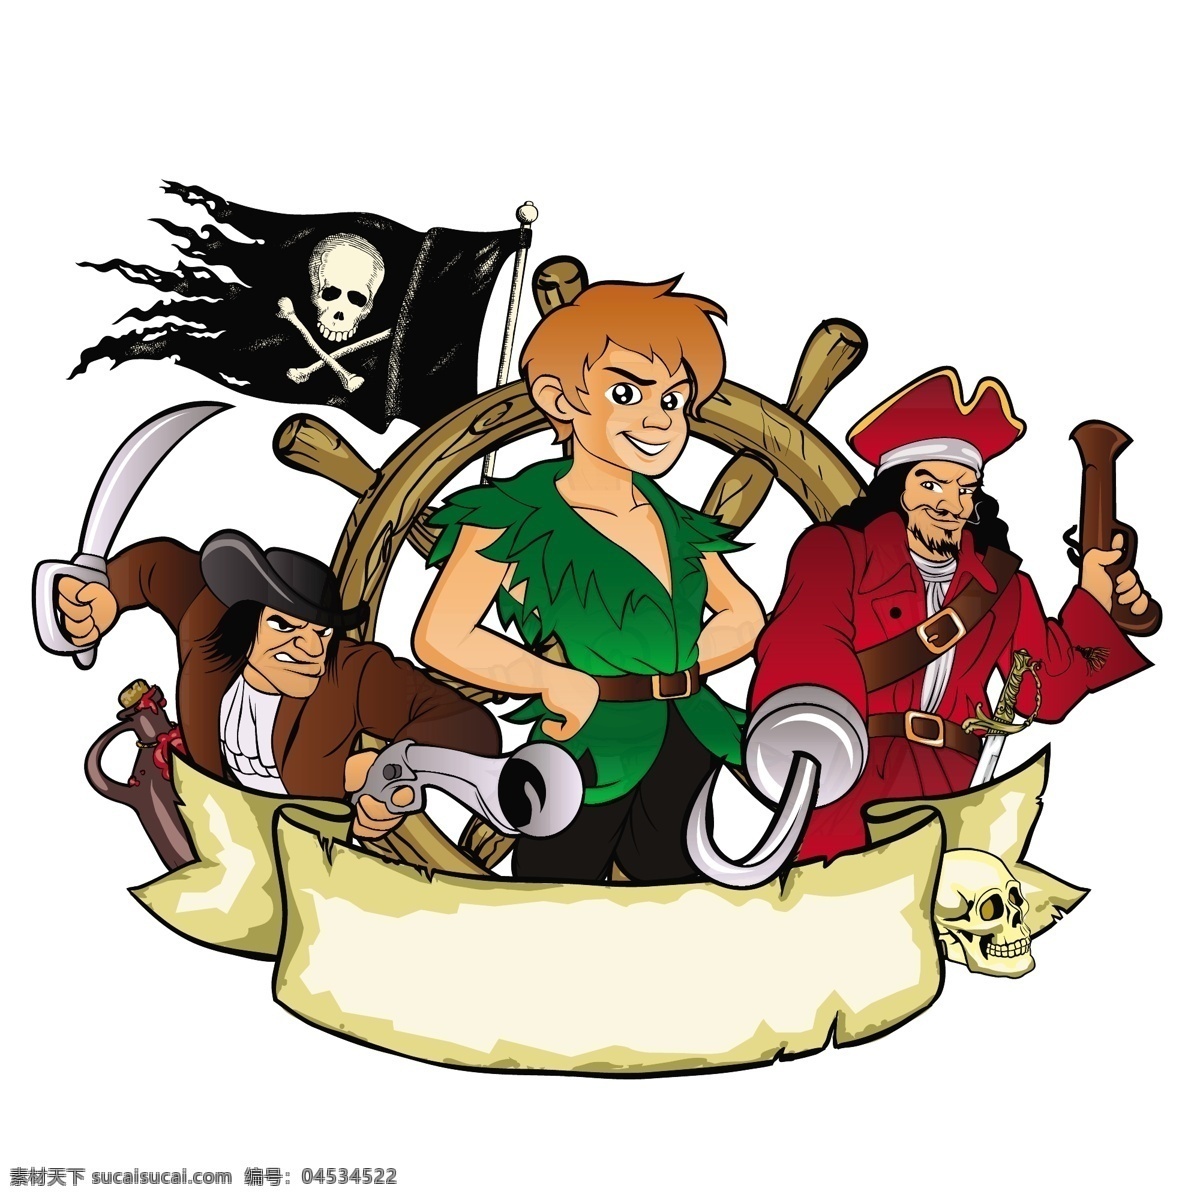 卡通 海盗 徽标设计 丝带 骷髅旗 卡通海盗 卡通徽标 标志设计 logo设计 商标设计 卡通插画 卡通漫画 标志图标 矢量素材